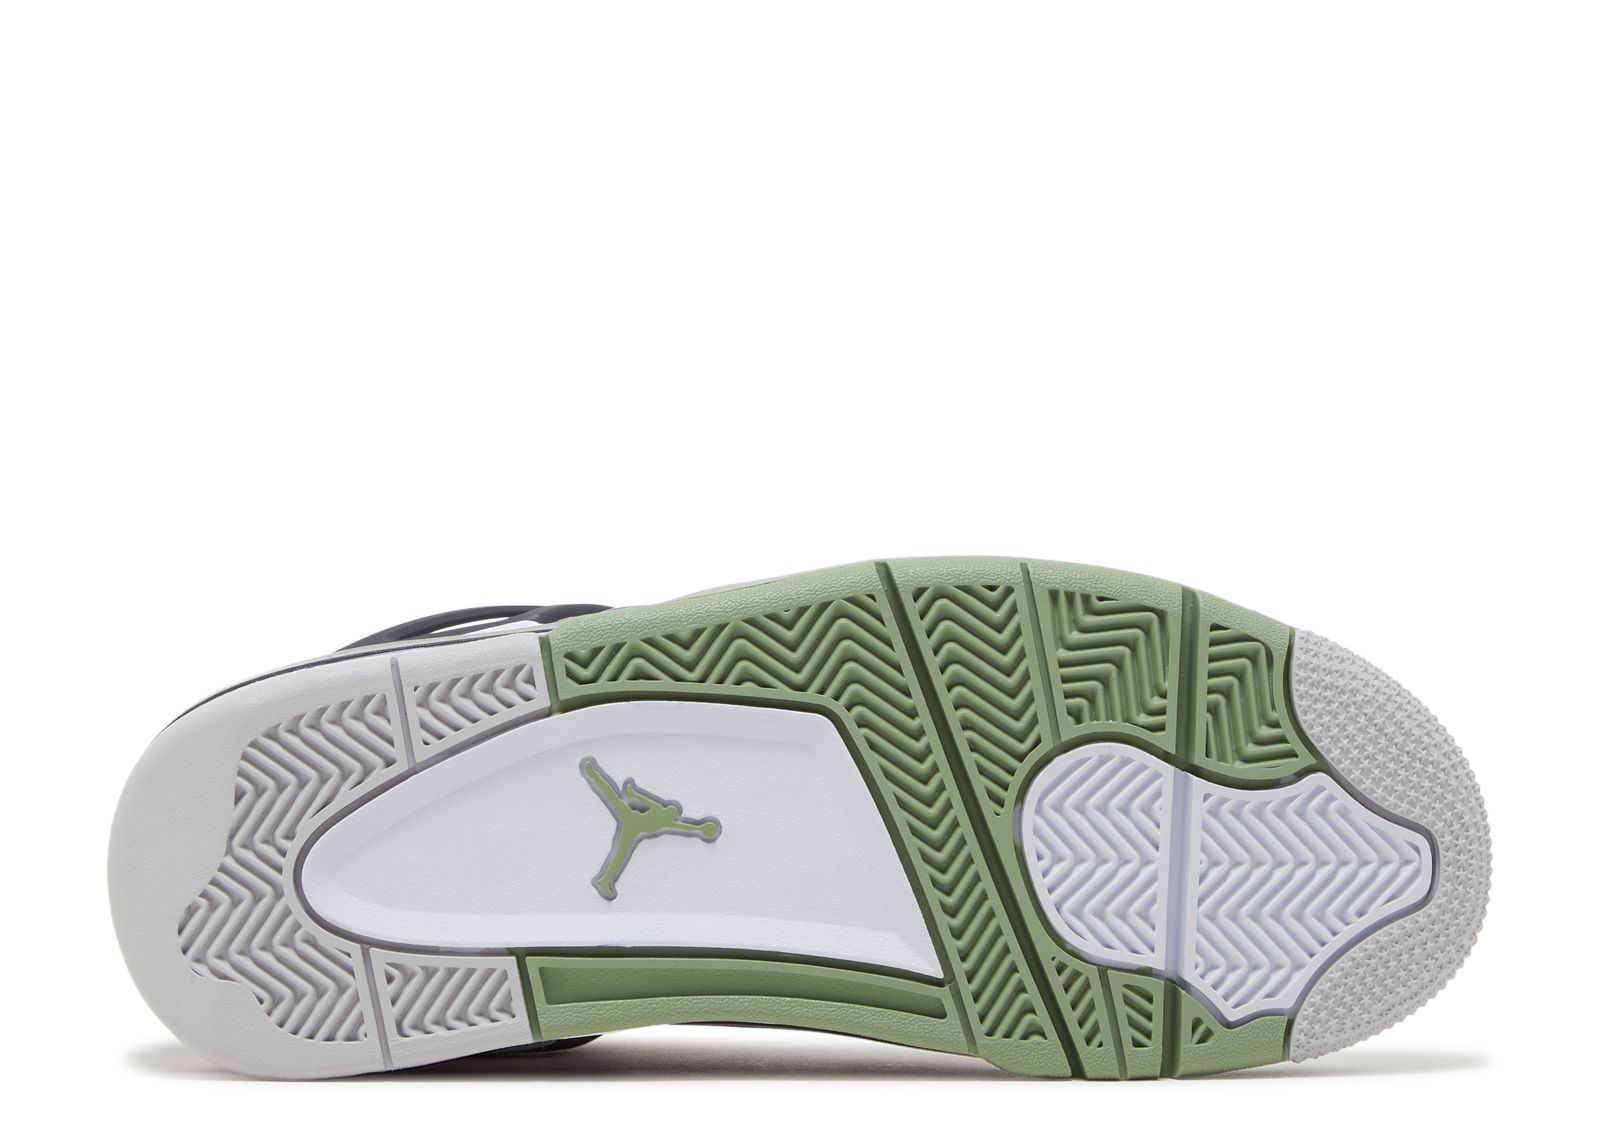 Air Jordan 4 Retro Seafoam Olive Green AQ9129-103 Wmns Size 10.5 - Men's  Size 9